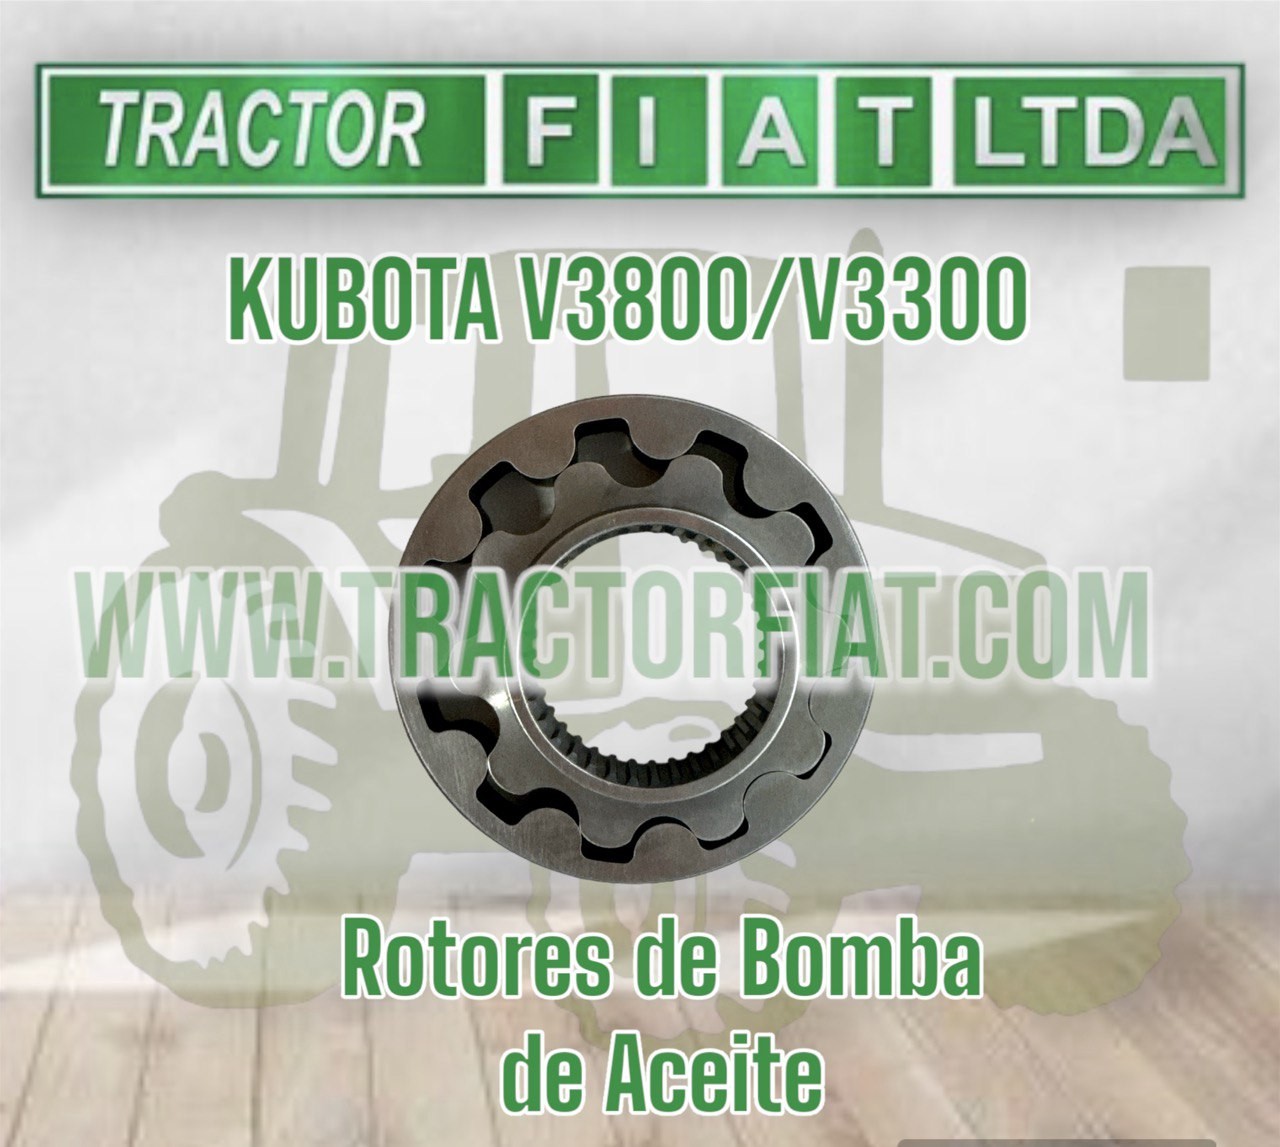 ROTORES DE BOMBA DE ACEITE-MOTOR KUBOTA V3300 /V3800